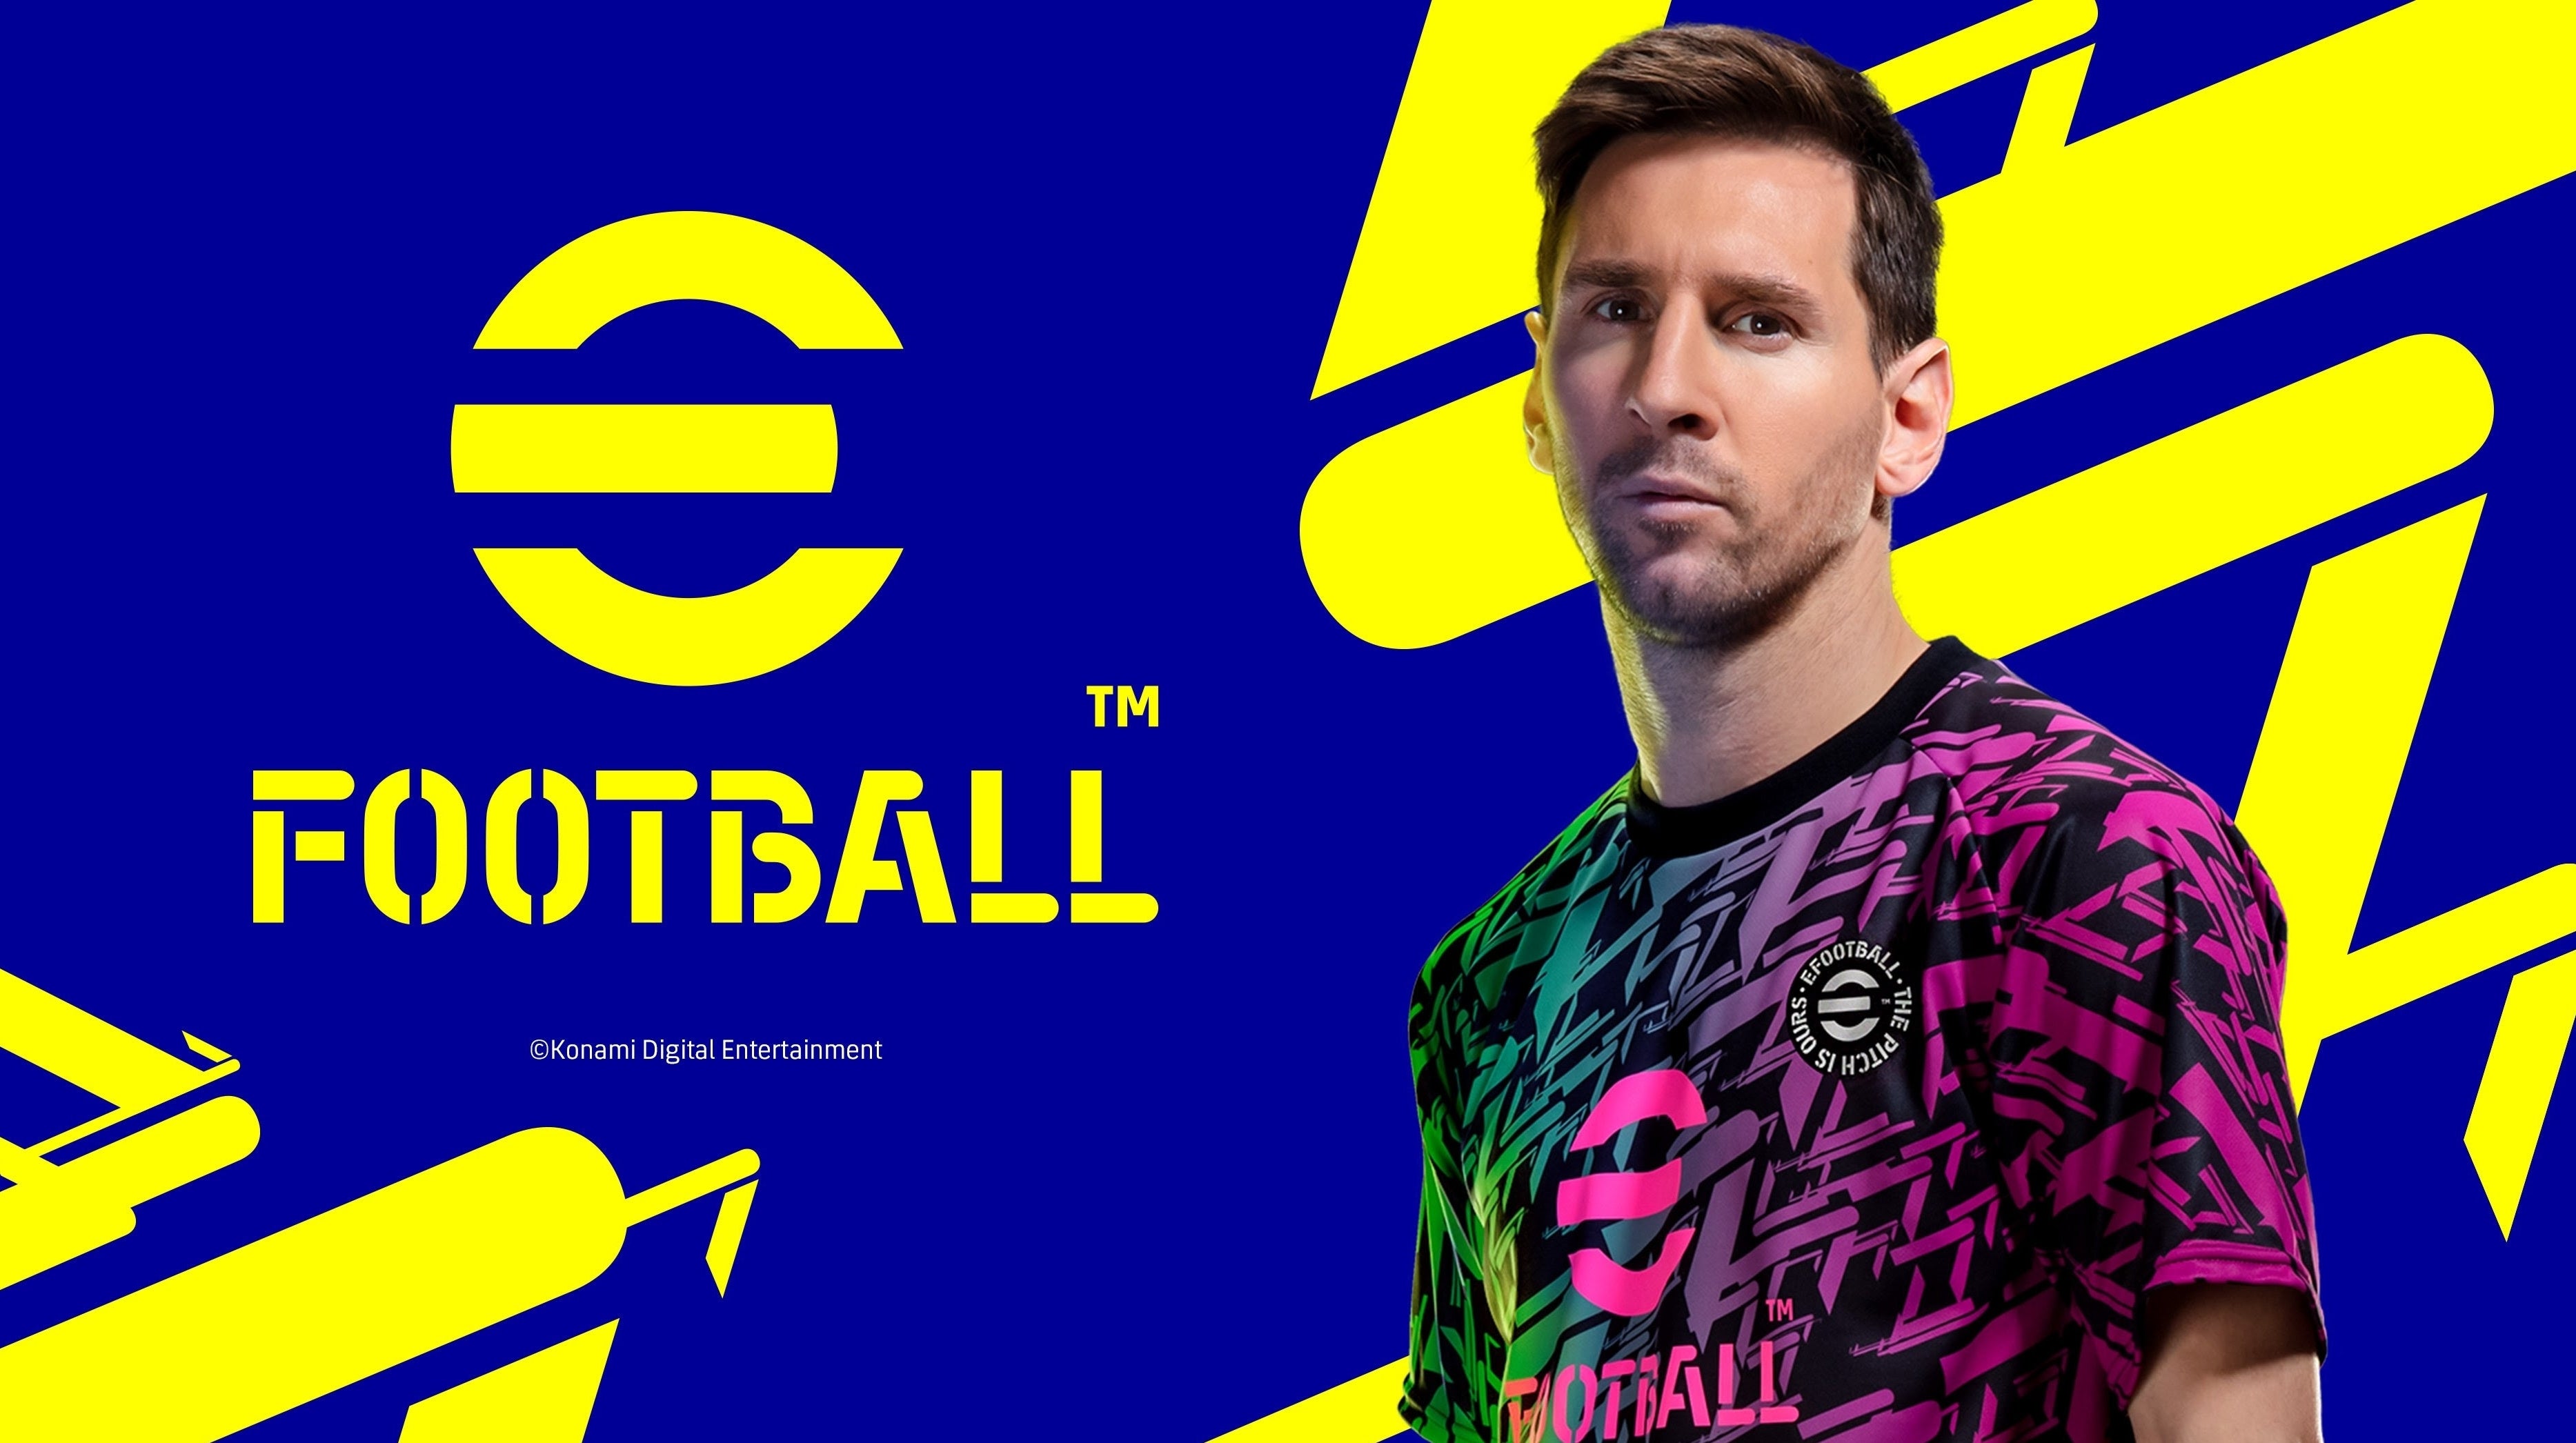 Imagem para PES 2022 / eFootball - Data de lançamento, plataformas, free-to-play, Neymar - Tudo o que sabemos